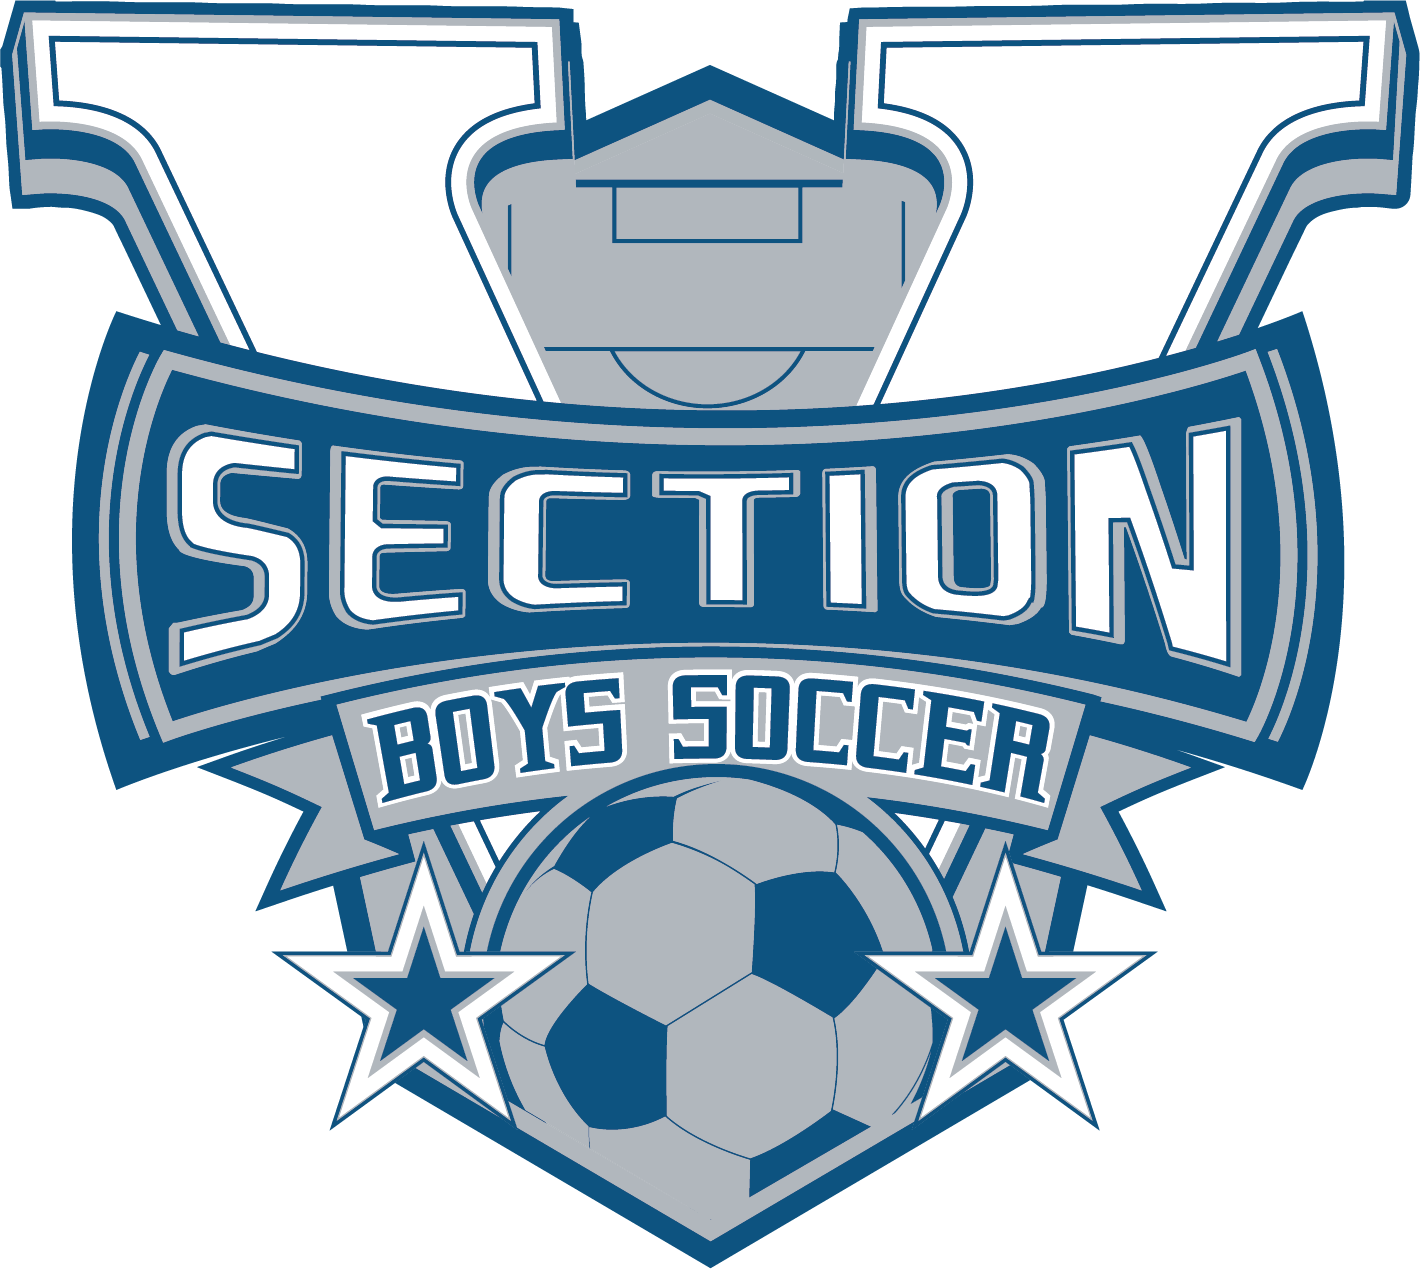 Section V boys soccer